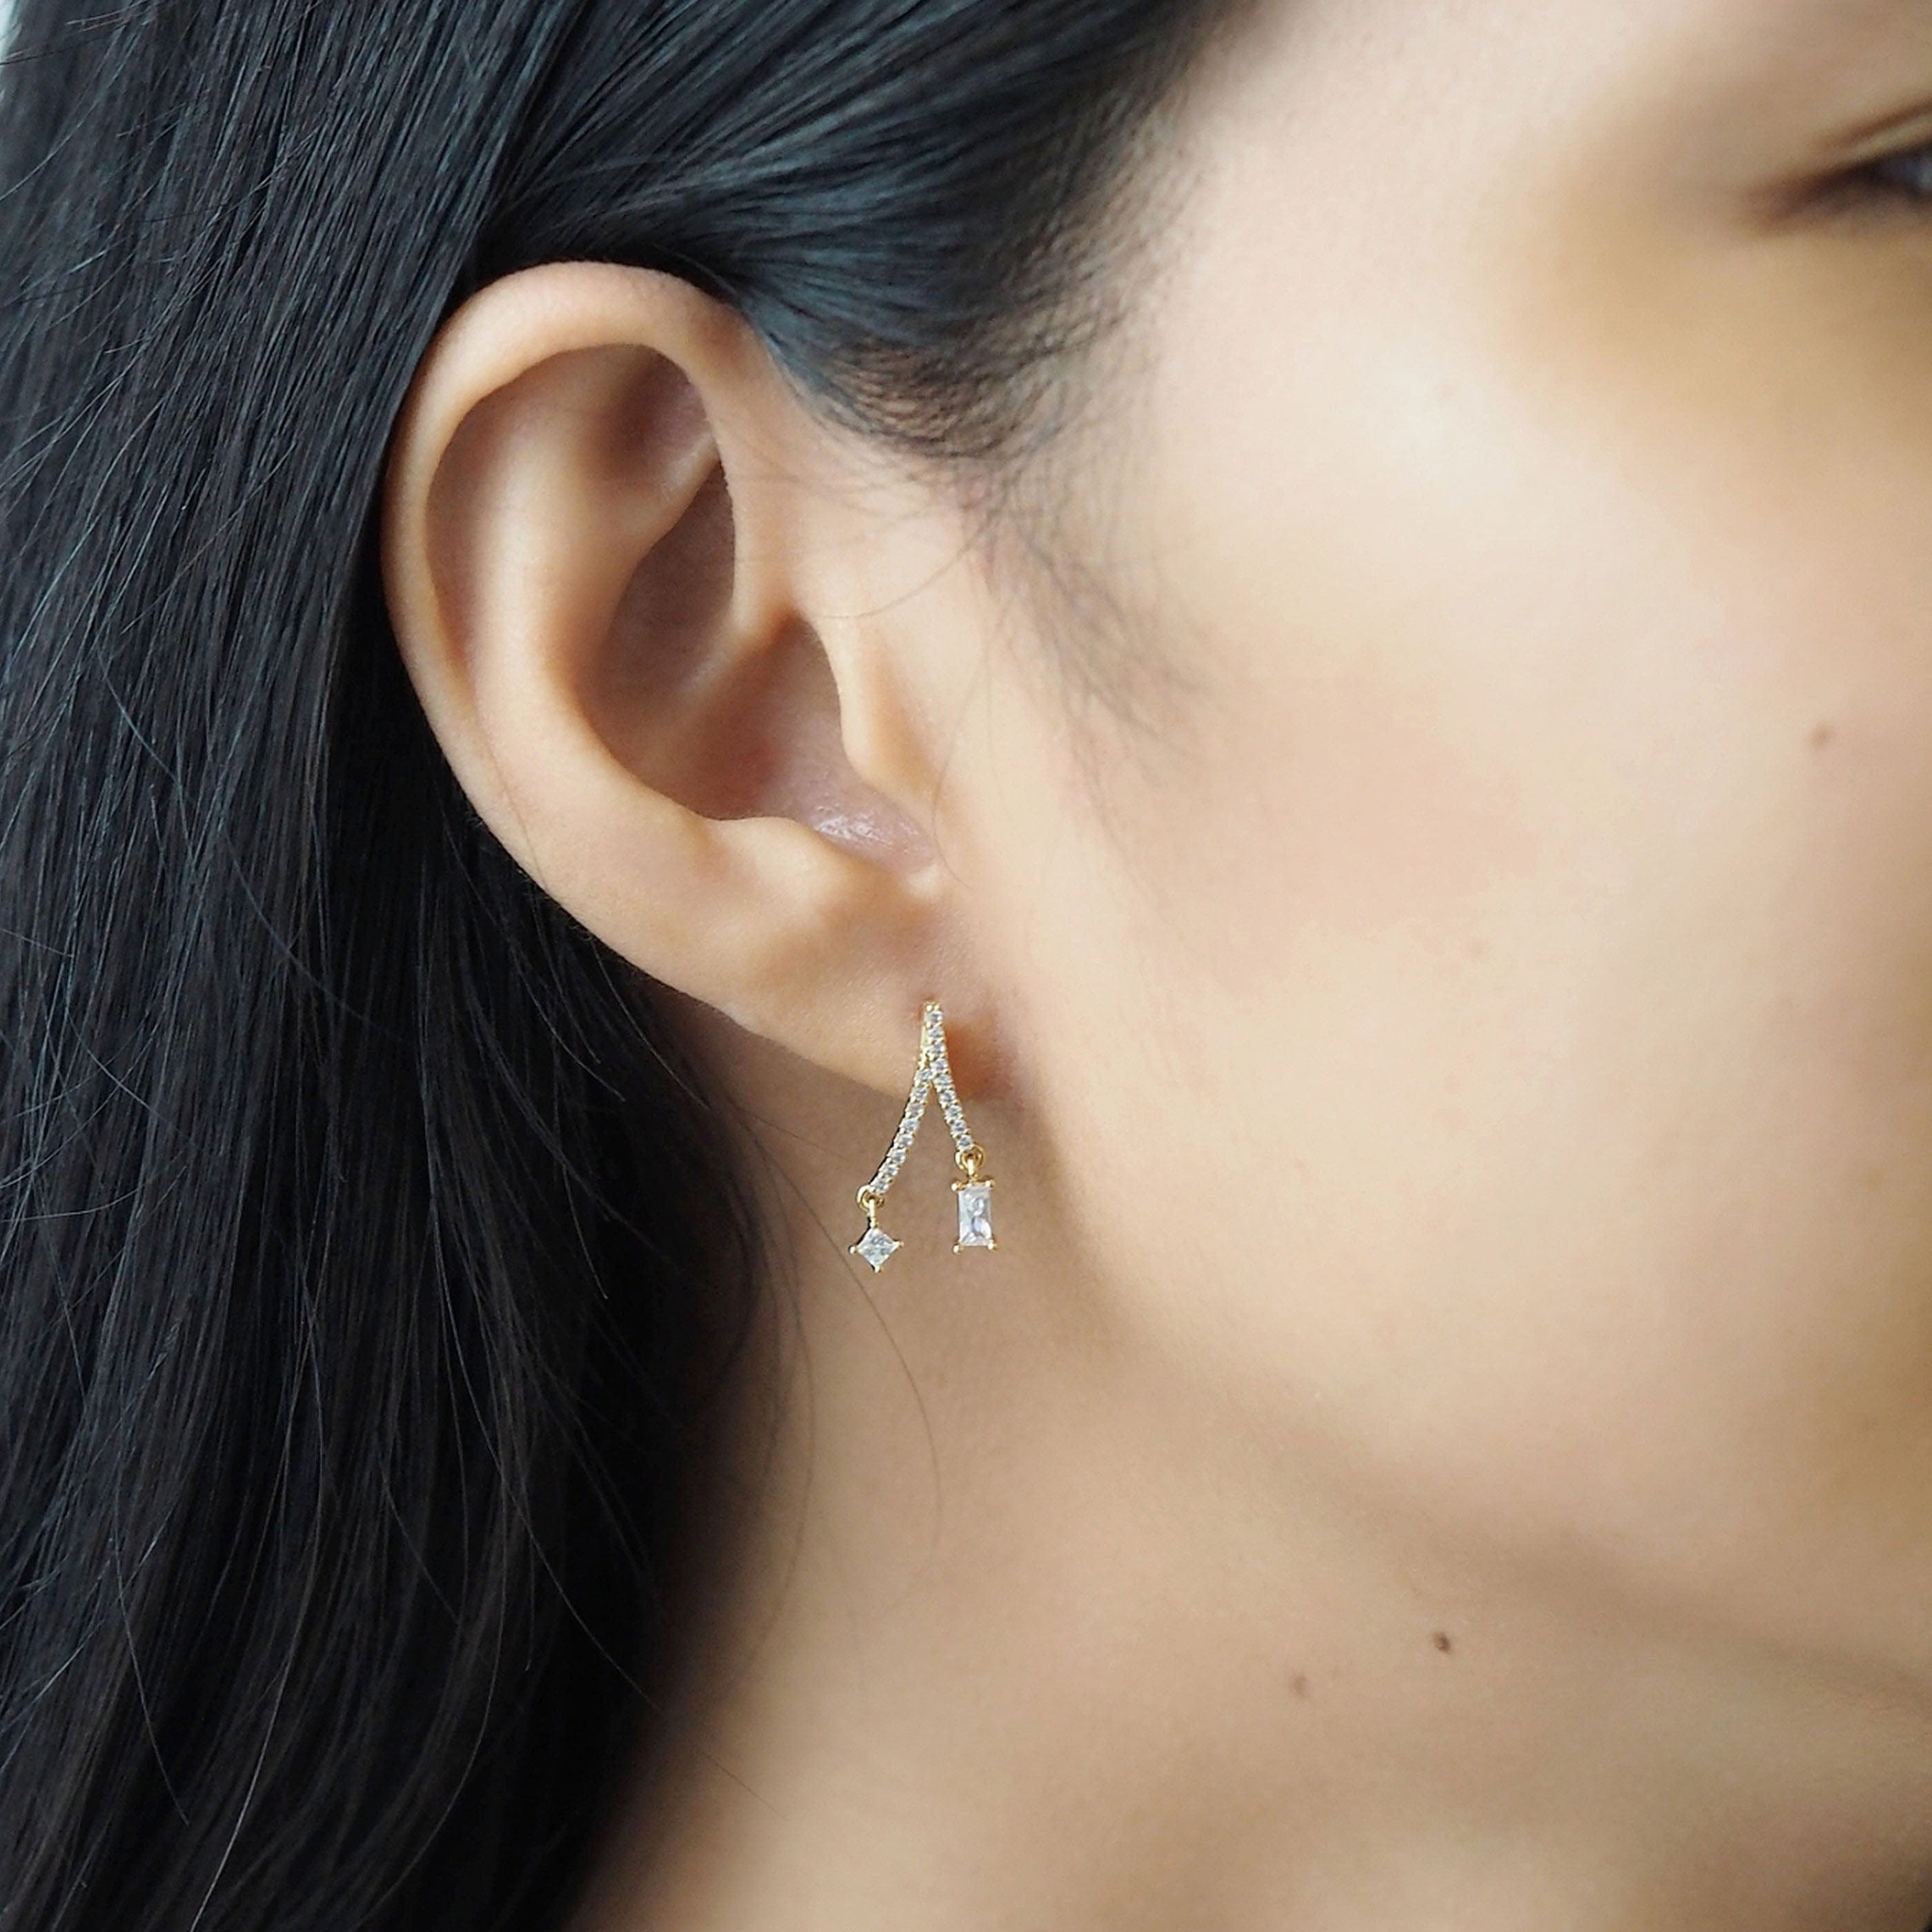 TAI JEWELRY Earrings Split Linear Pave Cz Earring